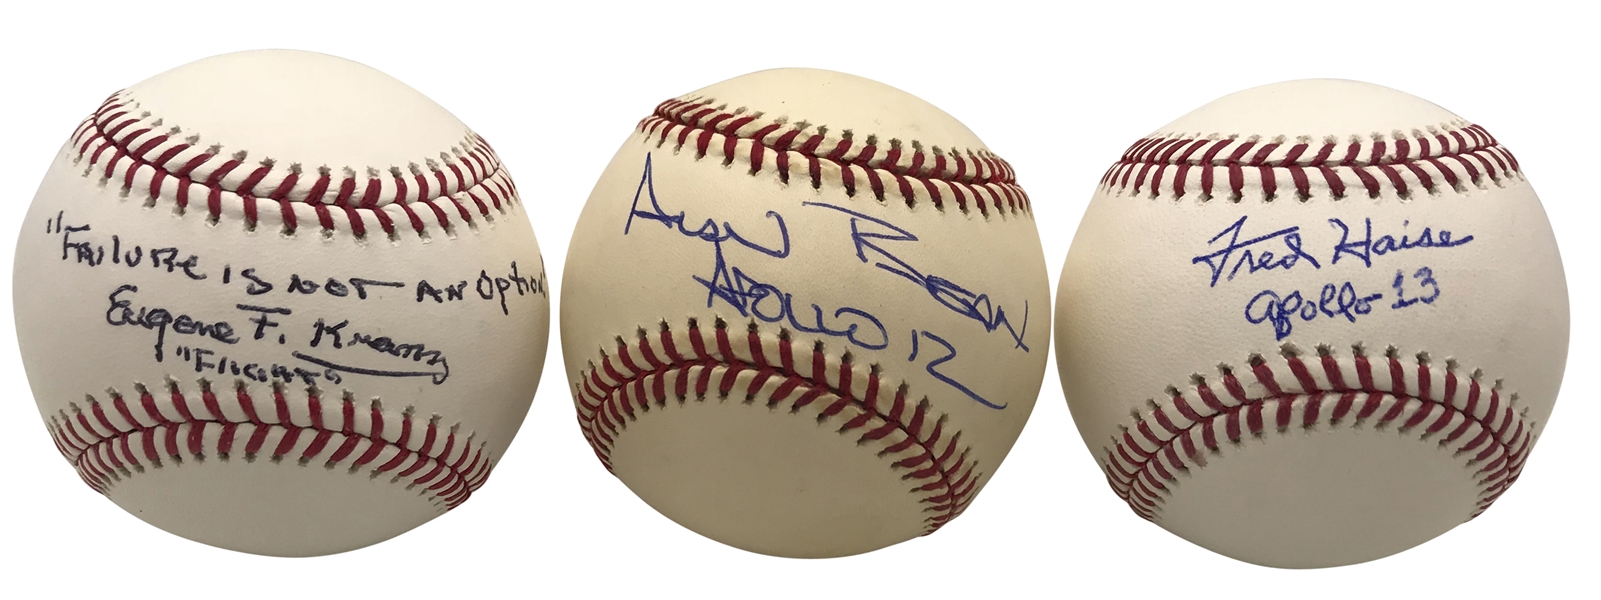 Lot of Three (3) NASA Single Signed Baseballs w/ Bean, Kranz & Haise (Beckett/BAS Guaranteed)